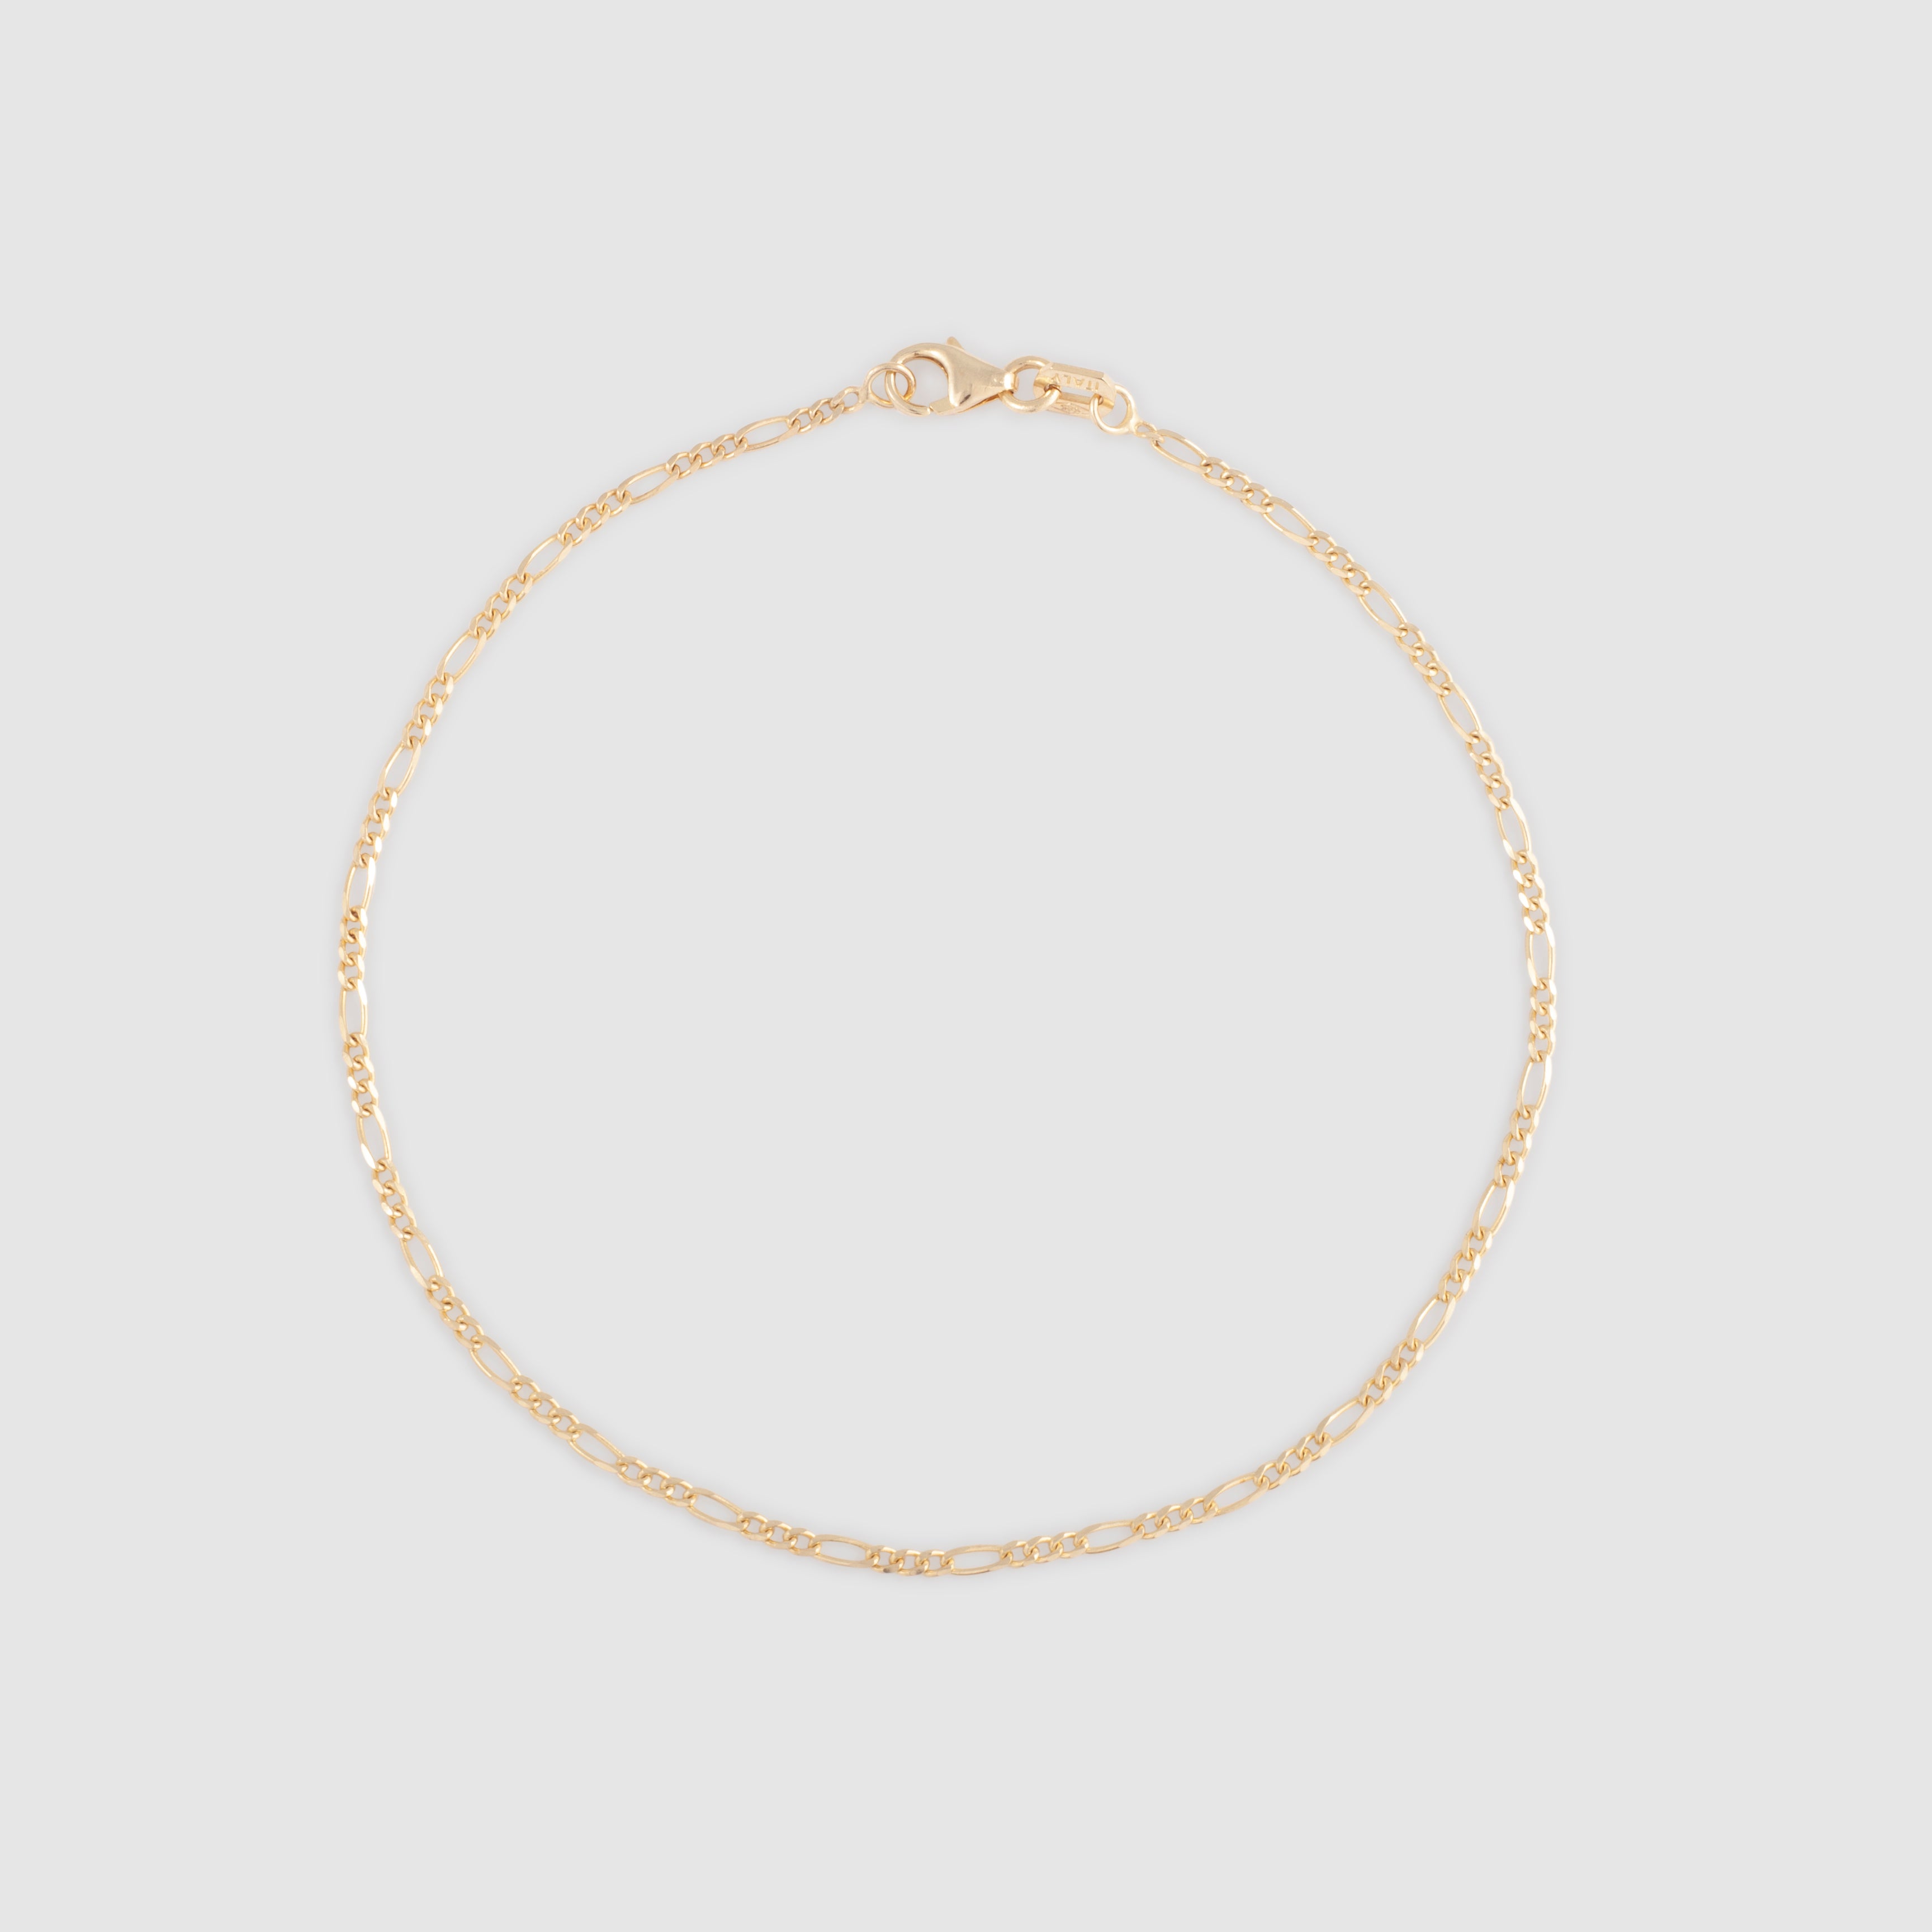 Gold thin figaro chain bracelet/anklet